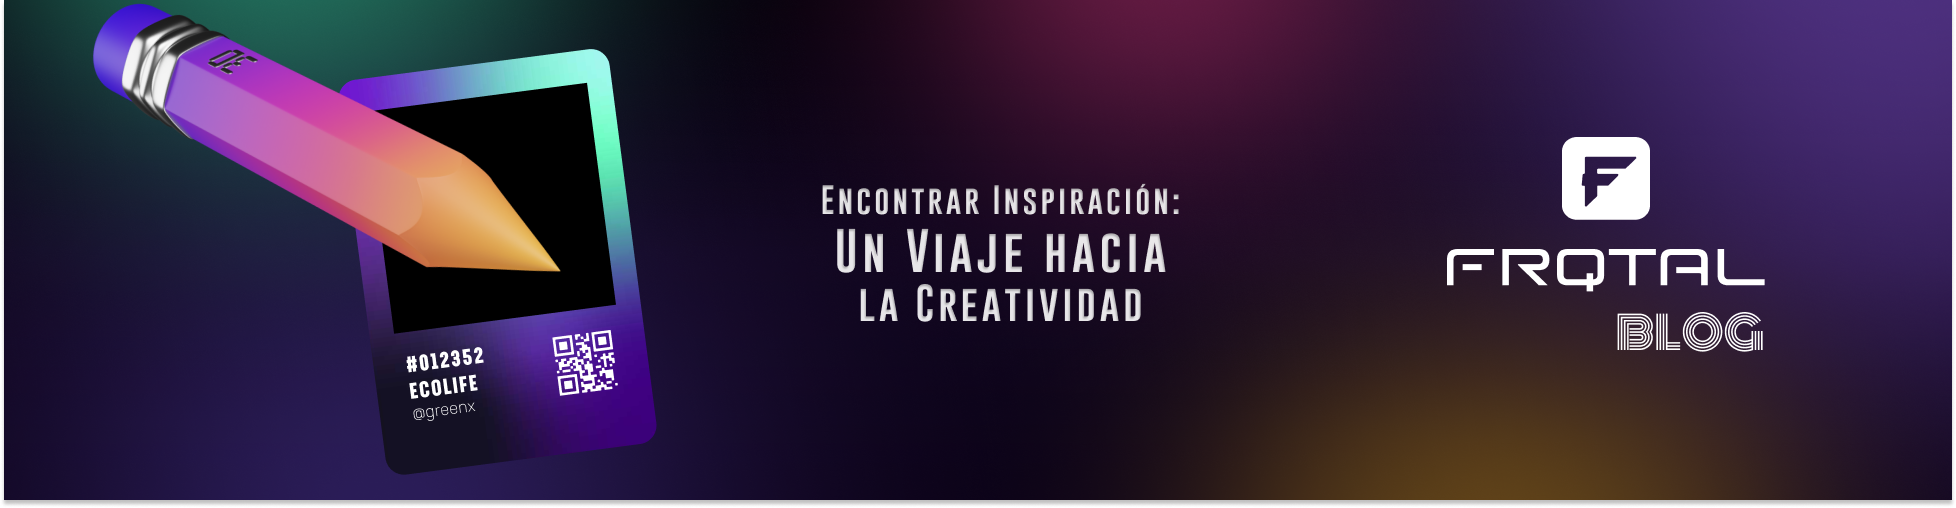 Encontrar Inspiración: Un Viaje hacia la Creatividad